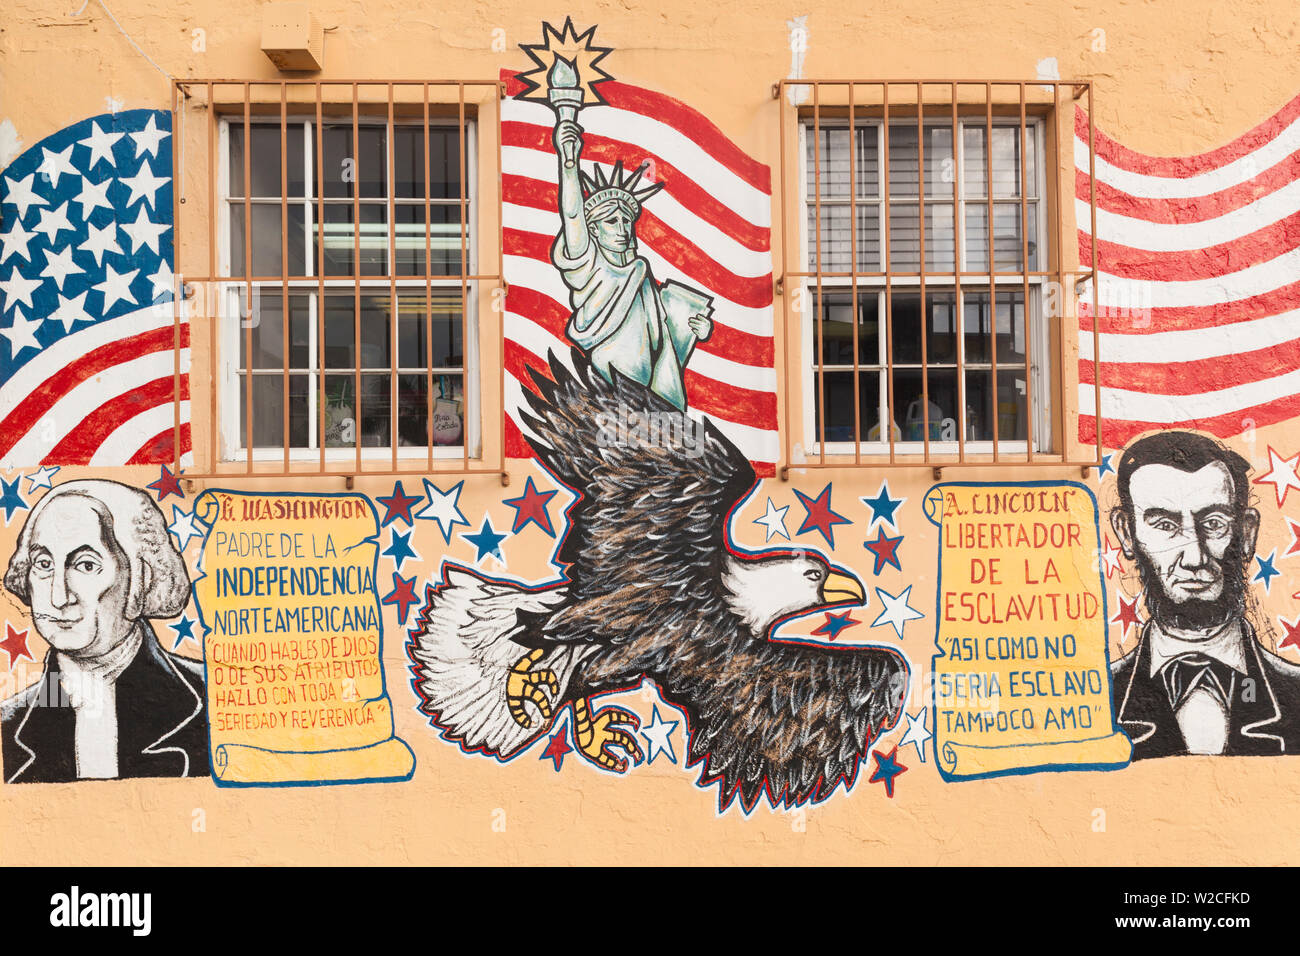 Stati Uniti d'America, Florida, Miami, Little Havana, Calle Ocho, SW 8th Street, carta murale con George Washington e Abramo Lincoln Foto Stock